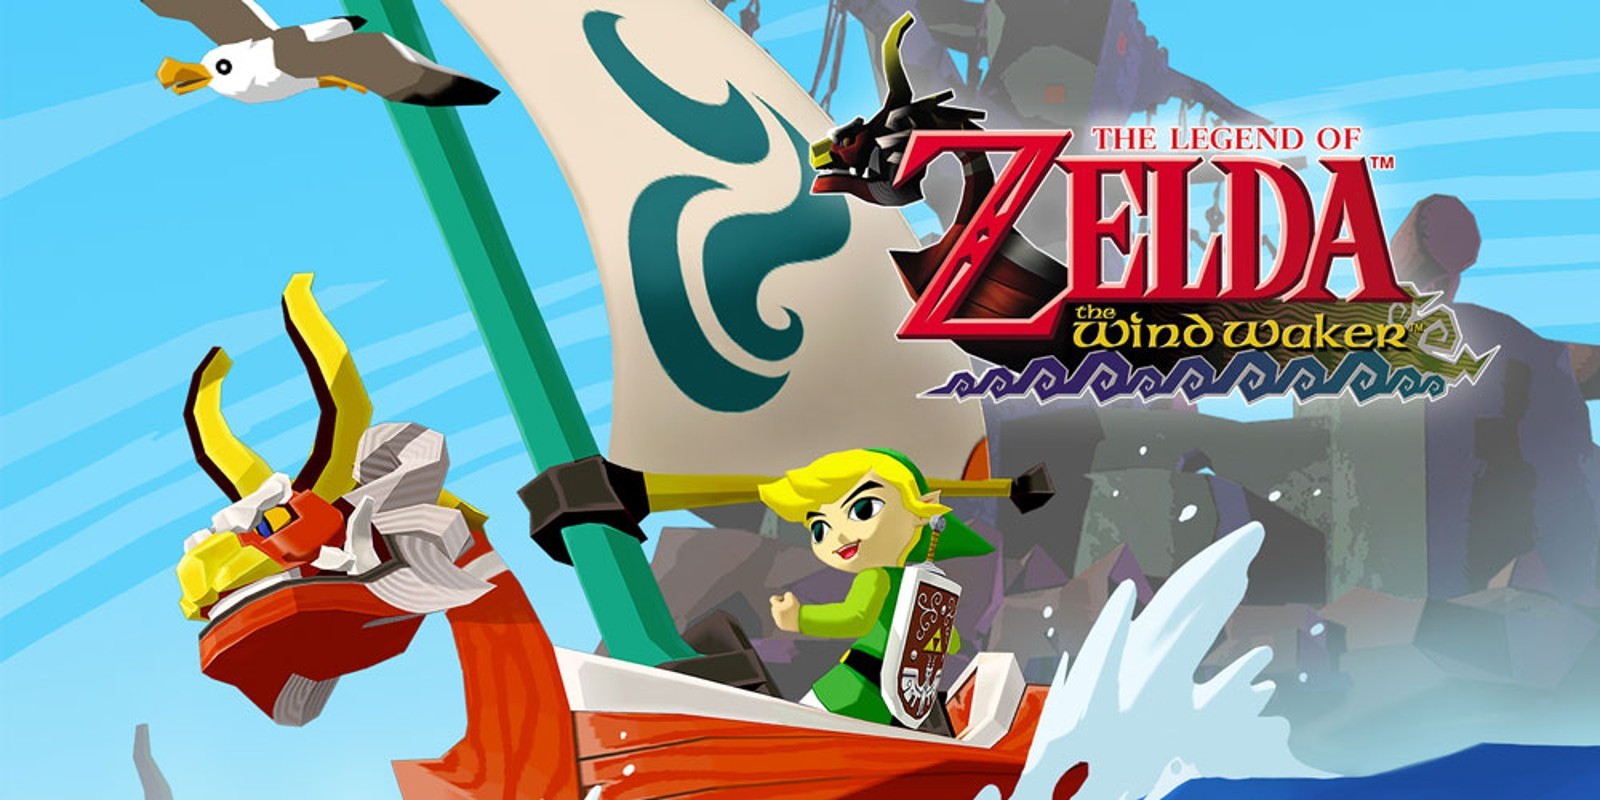 The Legend of Zelda: The Wind Waker. Nintendo.